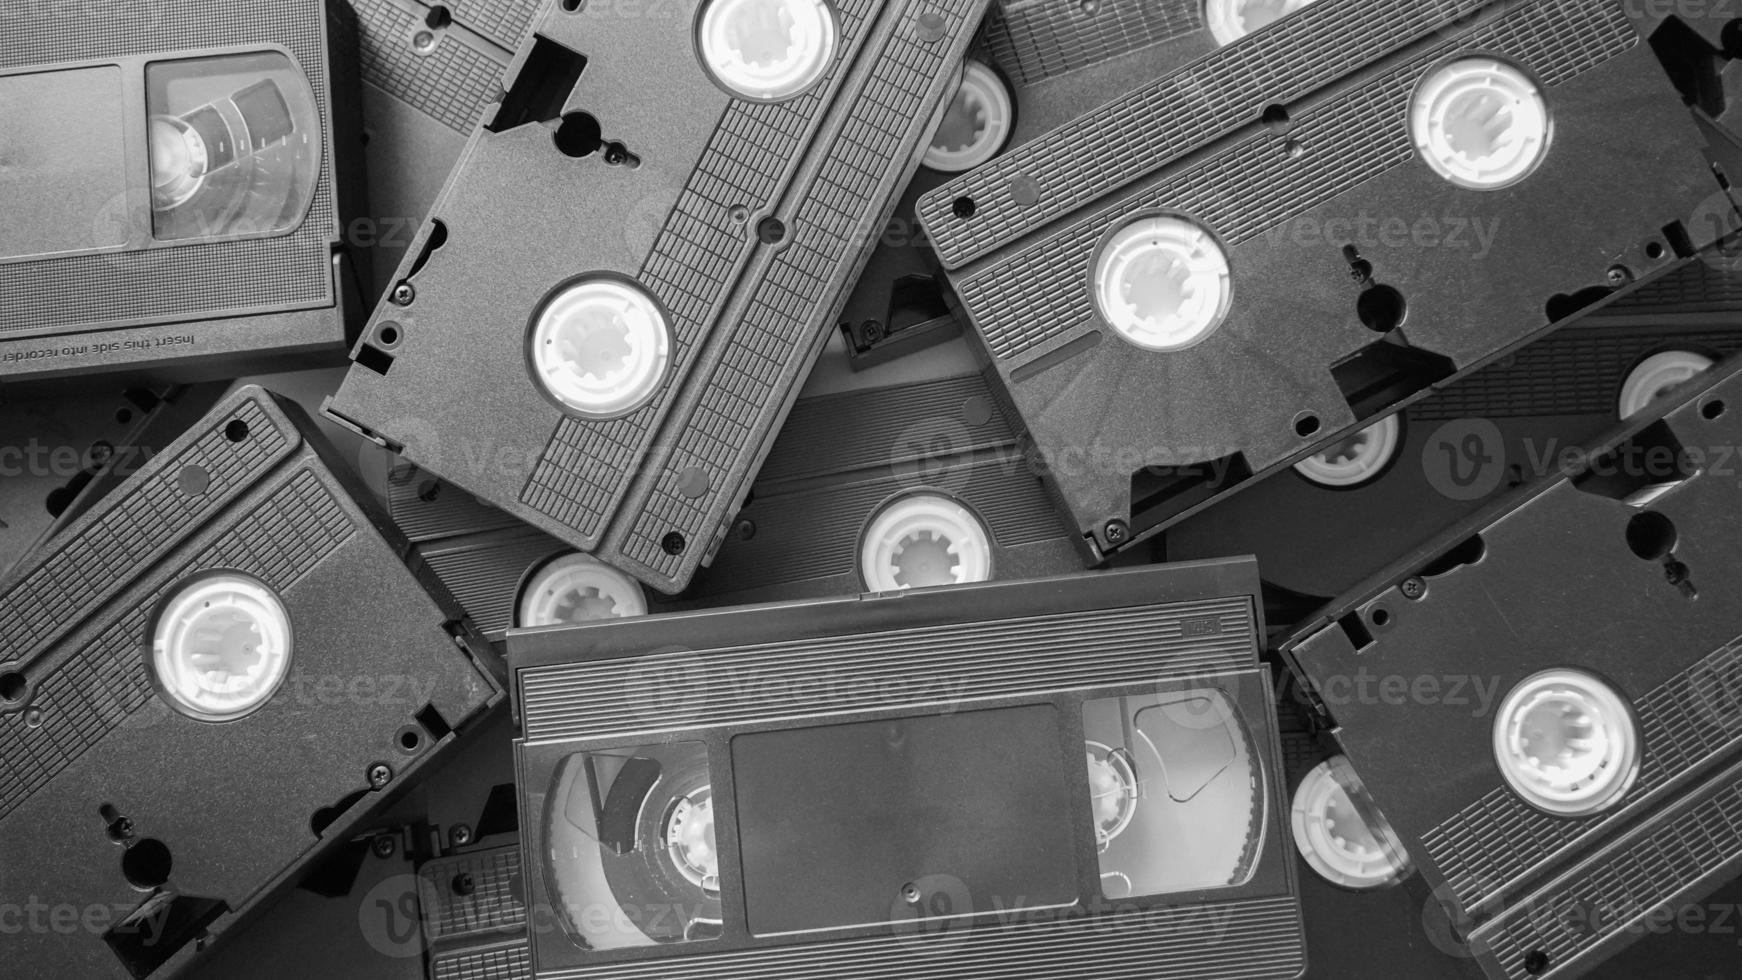 unordentlicher Stapel vhs-Bänder. Bandkassetten für Video-Heimsysteme. foto